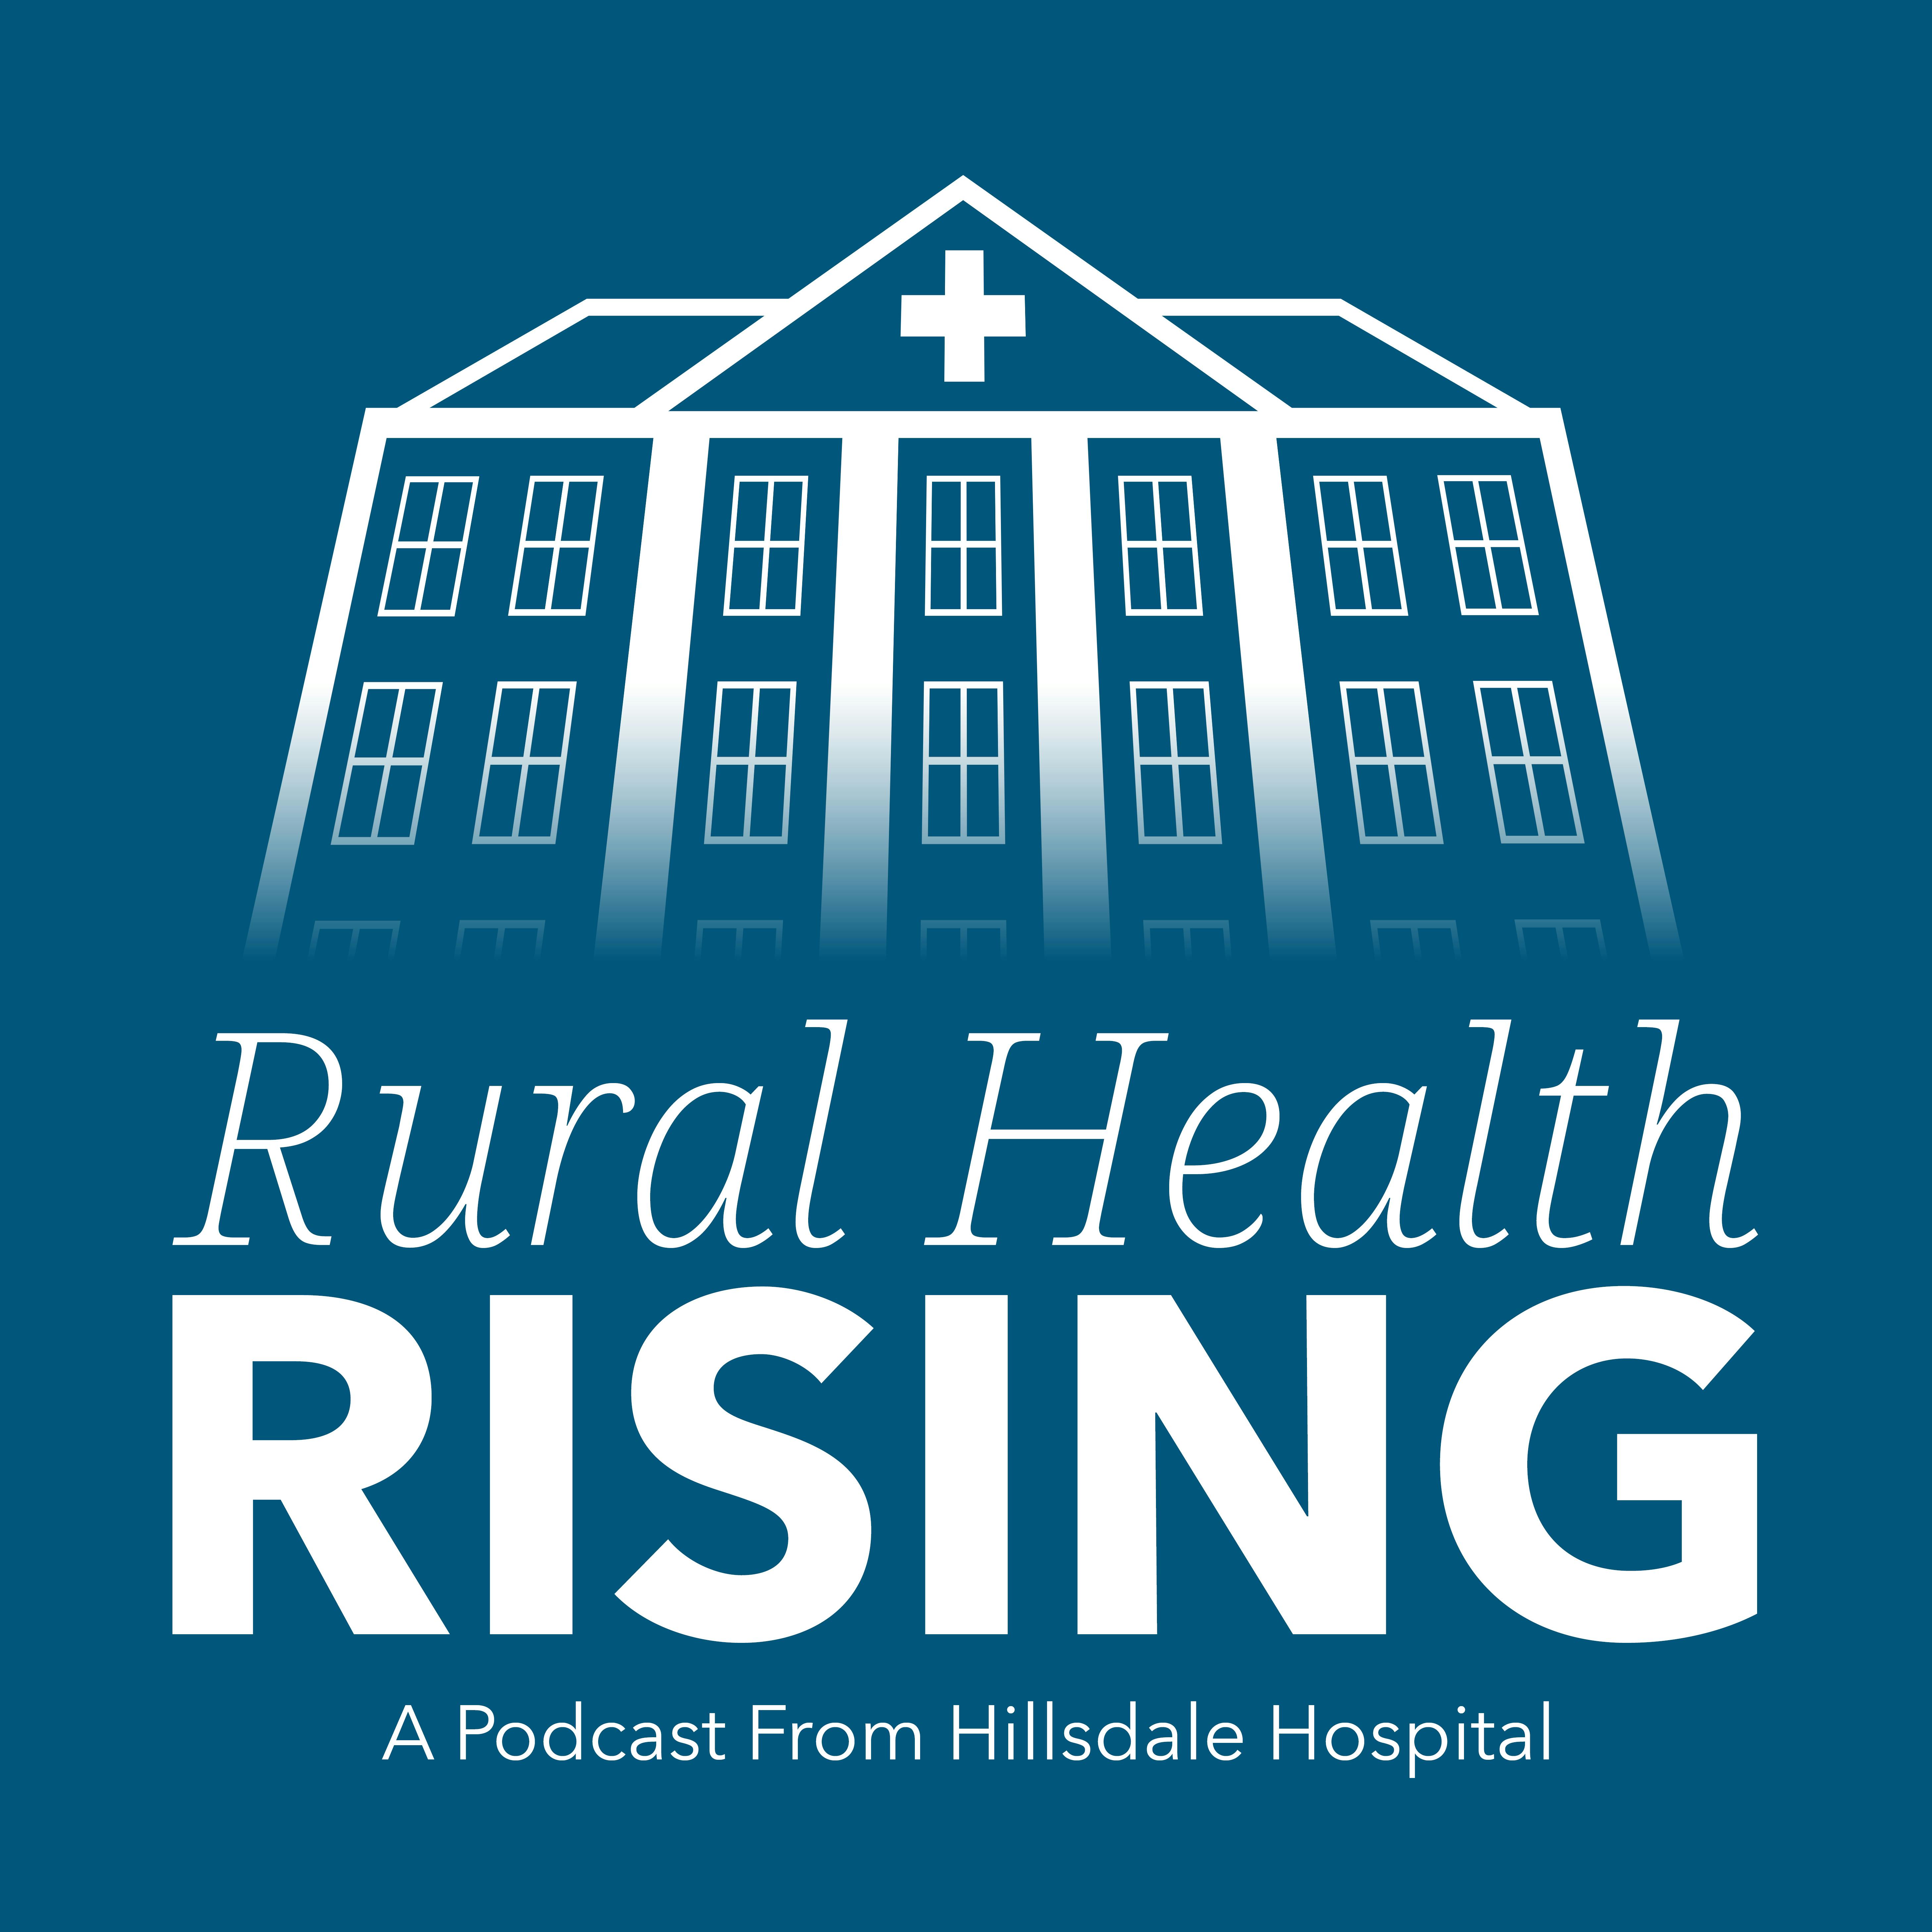 Episode 150: Strengthening Maternal Healthcare in Rural Communities